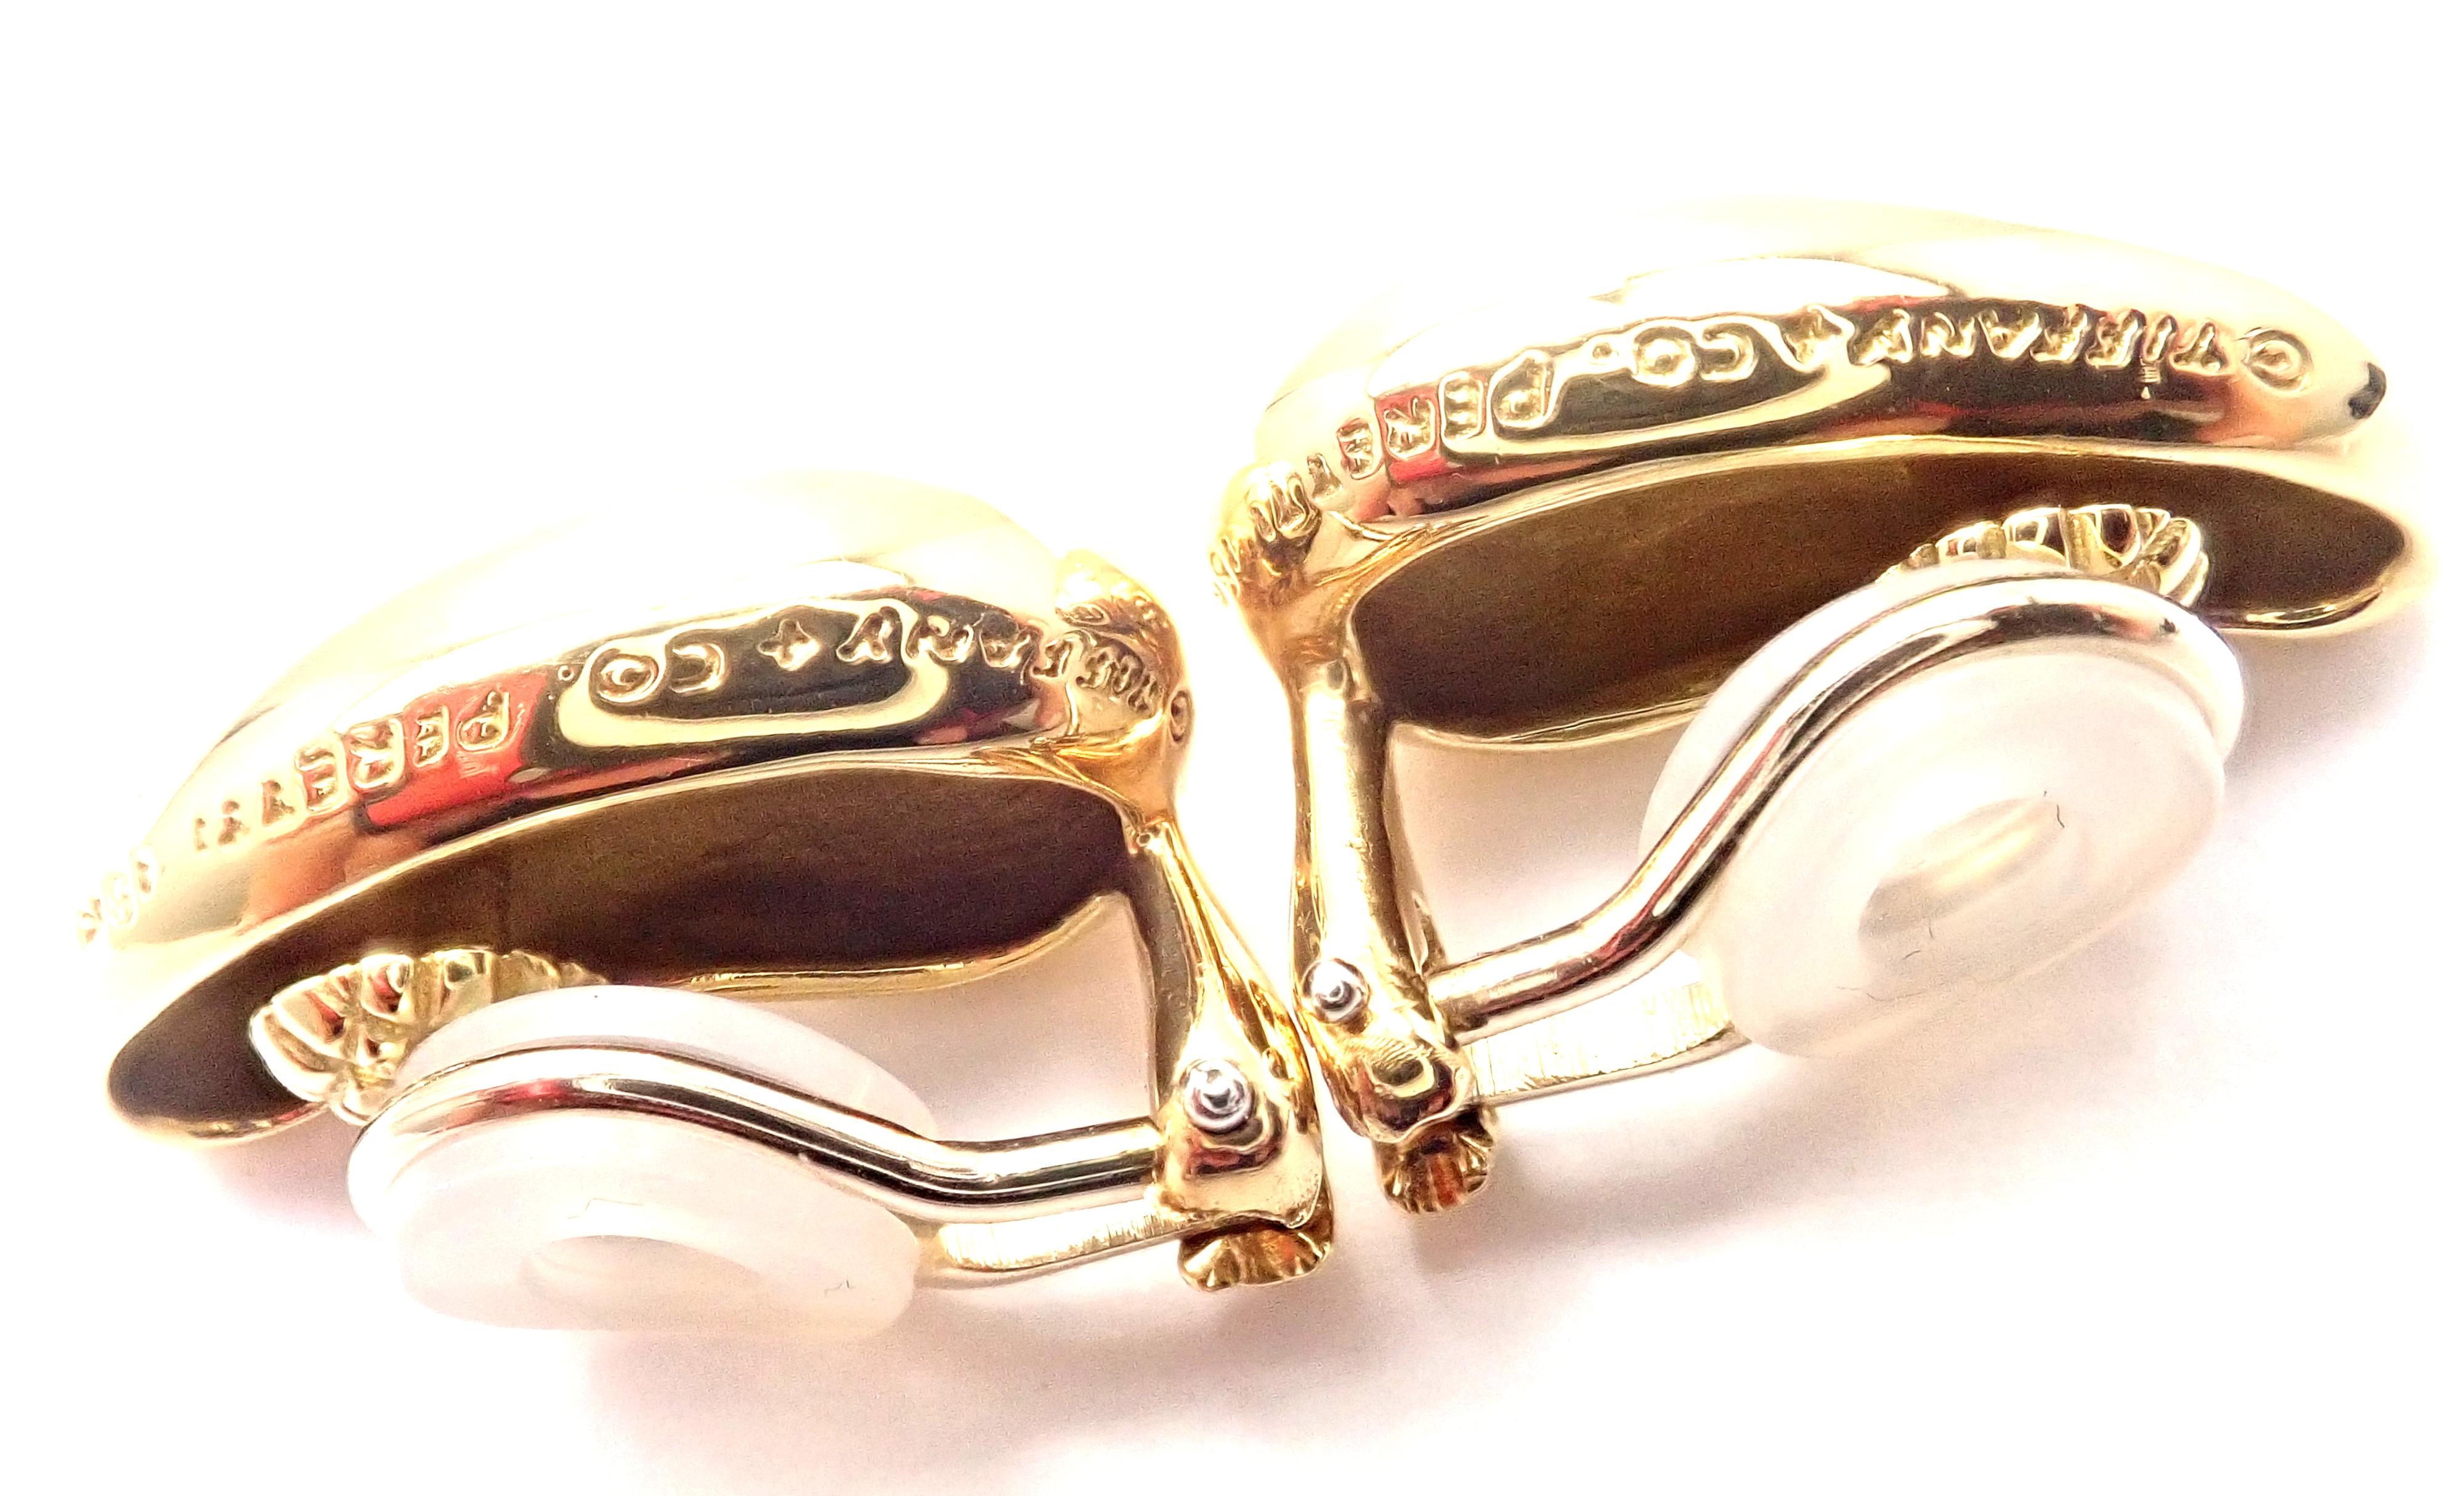 Boucles d'oreilles en or jaune 18k à gros haricots par Elsa Peretti pour Tiffany & Co.
De la magnifique Collection Design/One de Tiffany.
Ces boucles d'oreilles sont destinées aux oreilles non percées, mais peuvent être converties en ajoutant des